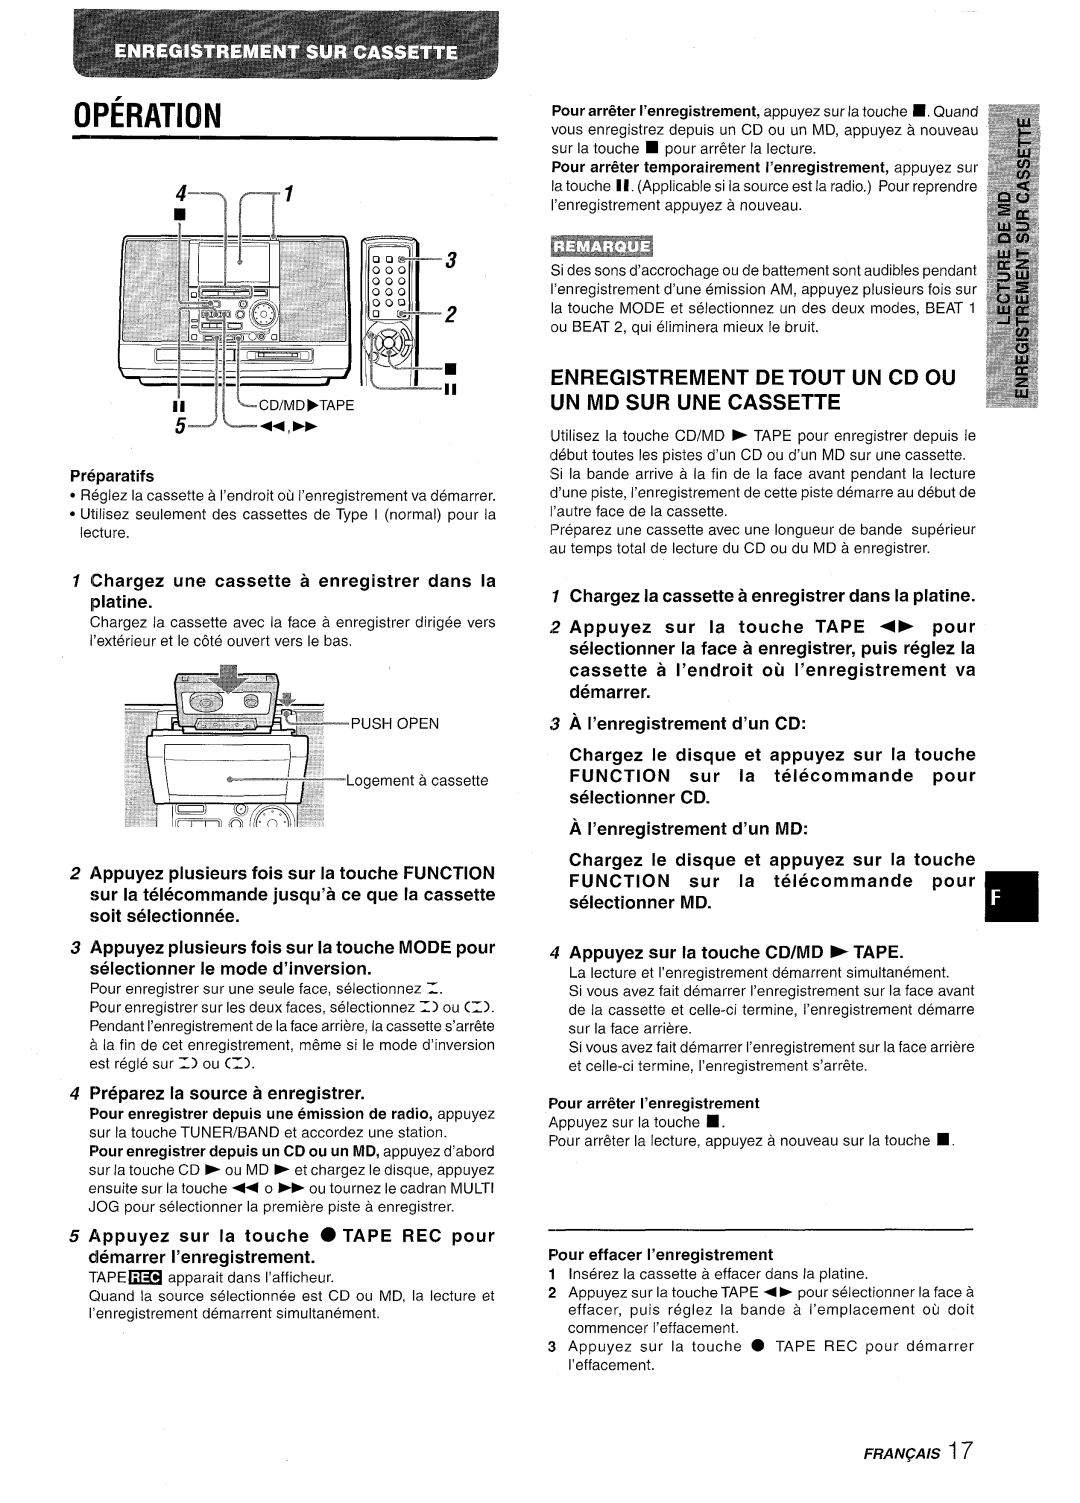 Aiwa CSD-MD50 manual Enregistrement Detout Un Cd Ou Un Md Sur Une Cassette, g-Jey”E, Operation 